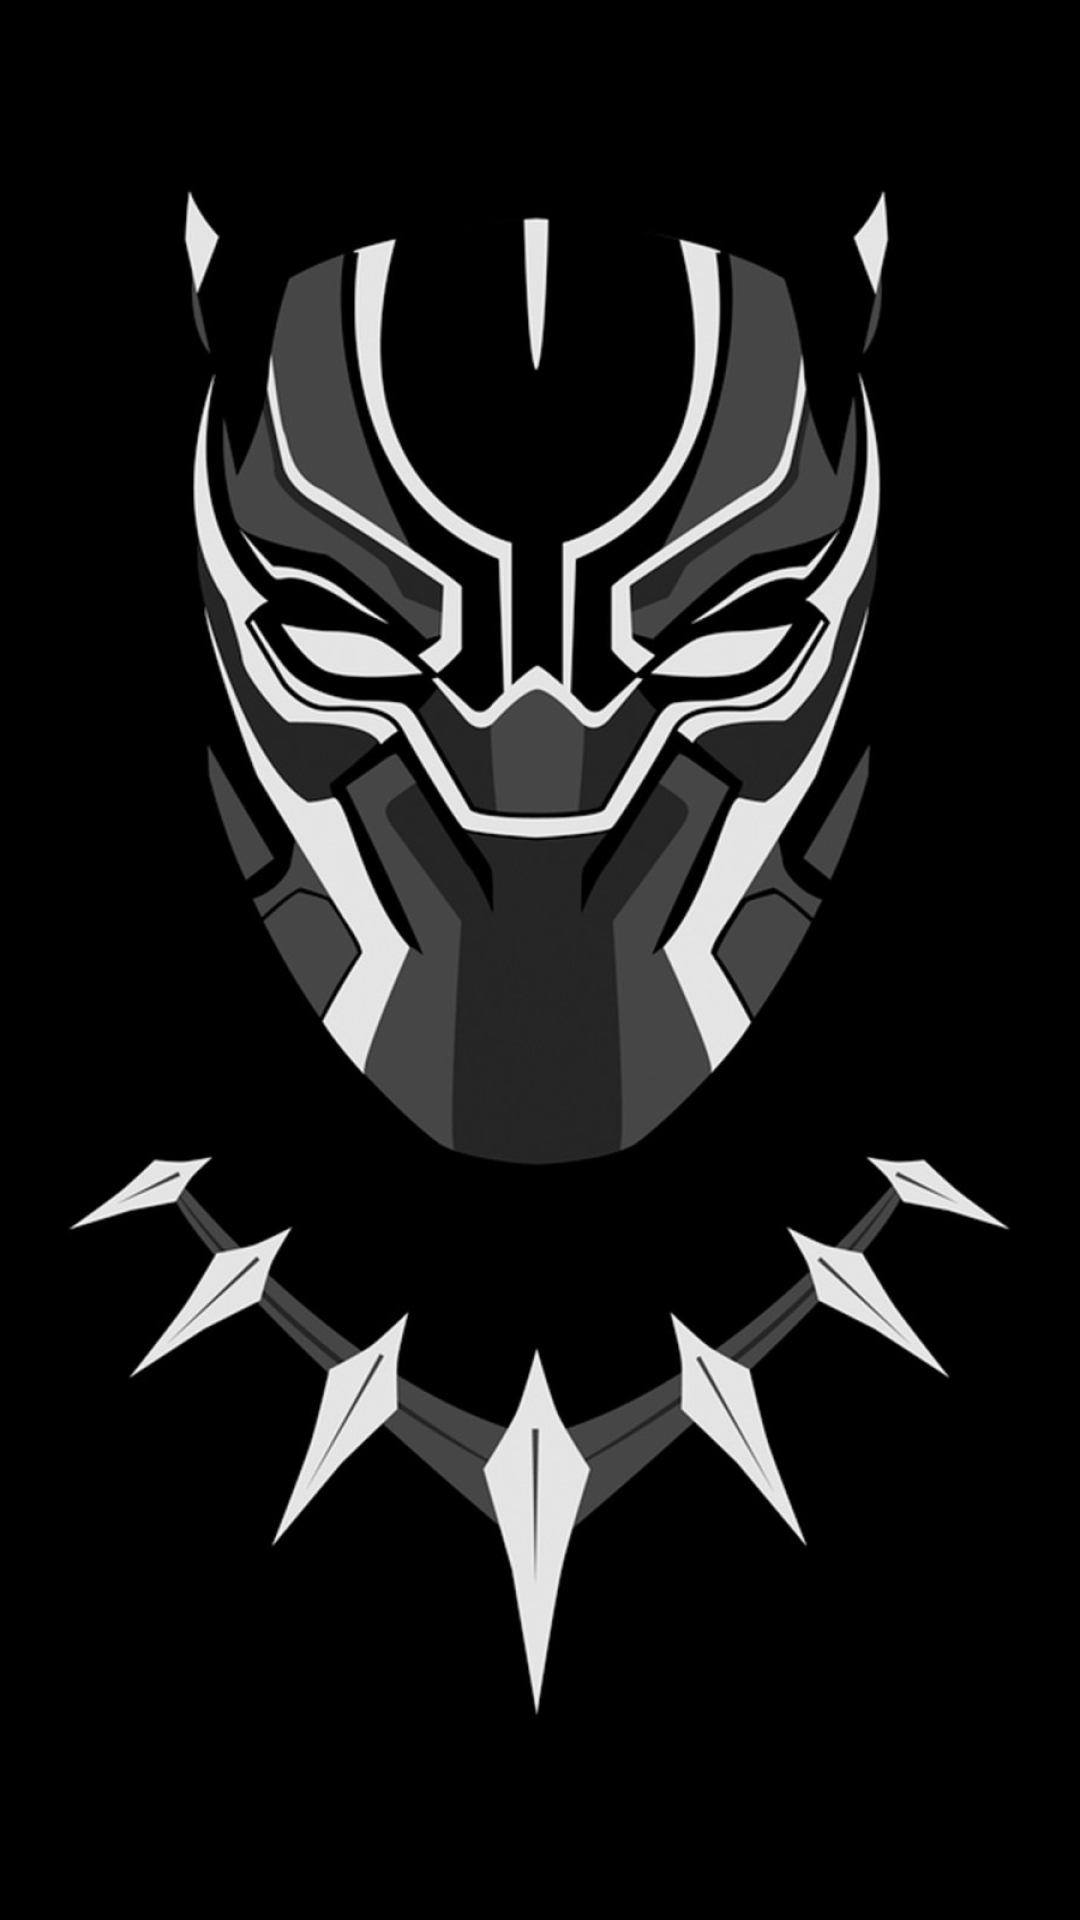 Download Black Panther Minimal Artwork 1080x1920 Resolution Full